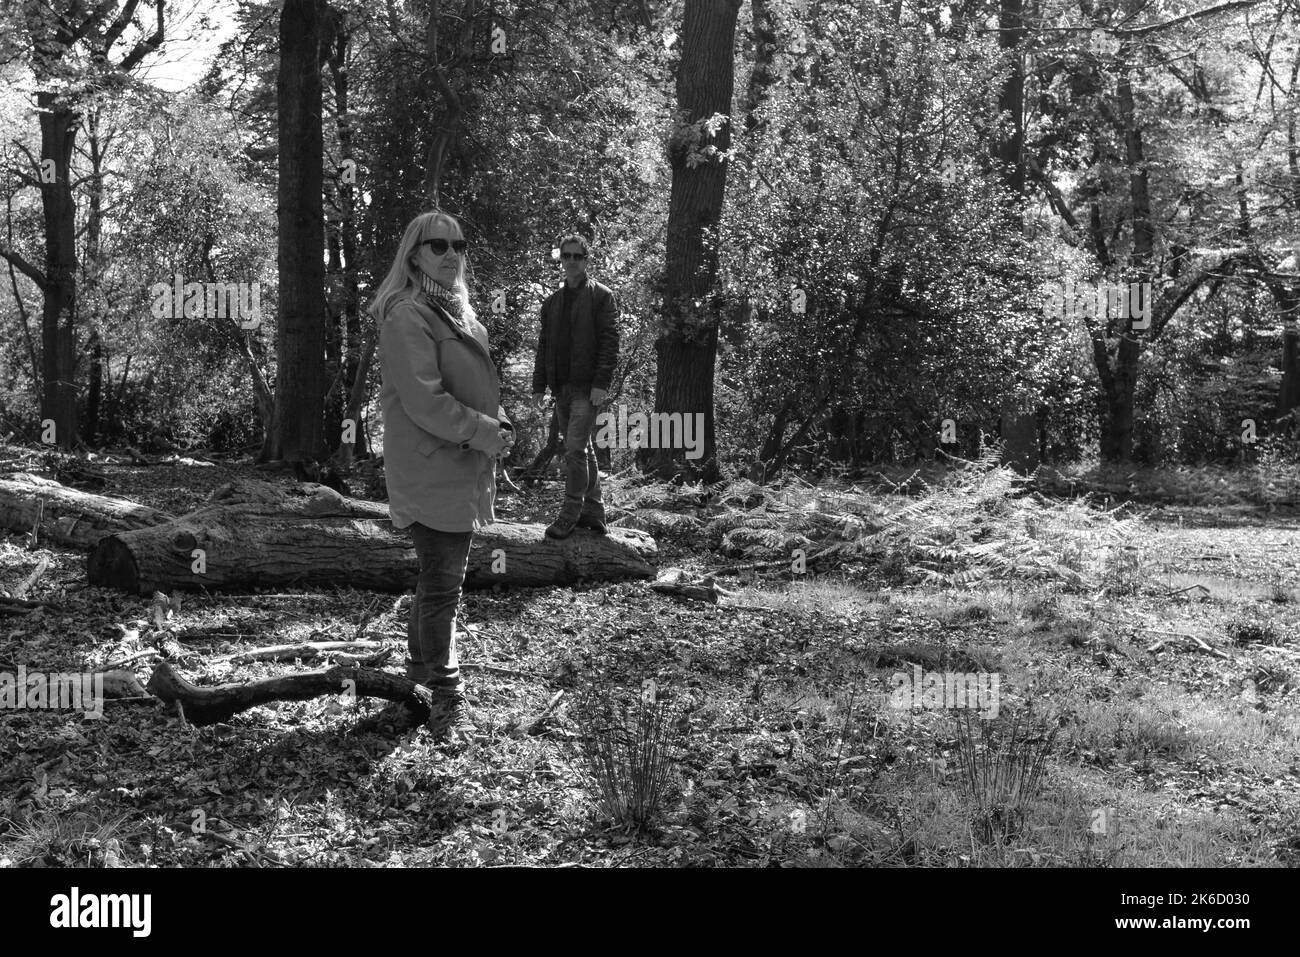 Coppia, donna e uomo, in piedi nel bosco o nella foresta in posizioni sfalsate guardando la telecamera con atteggiamento. Bianco e nero. Foto Stock